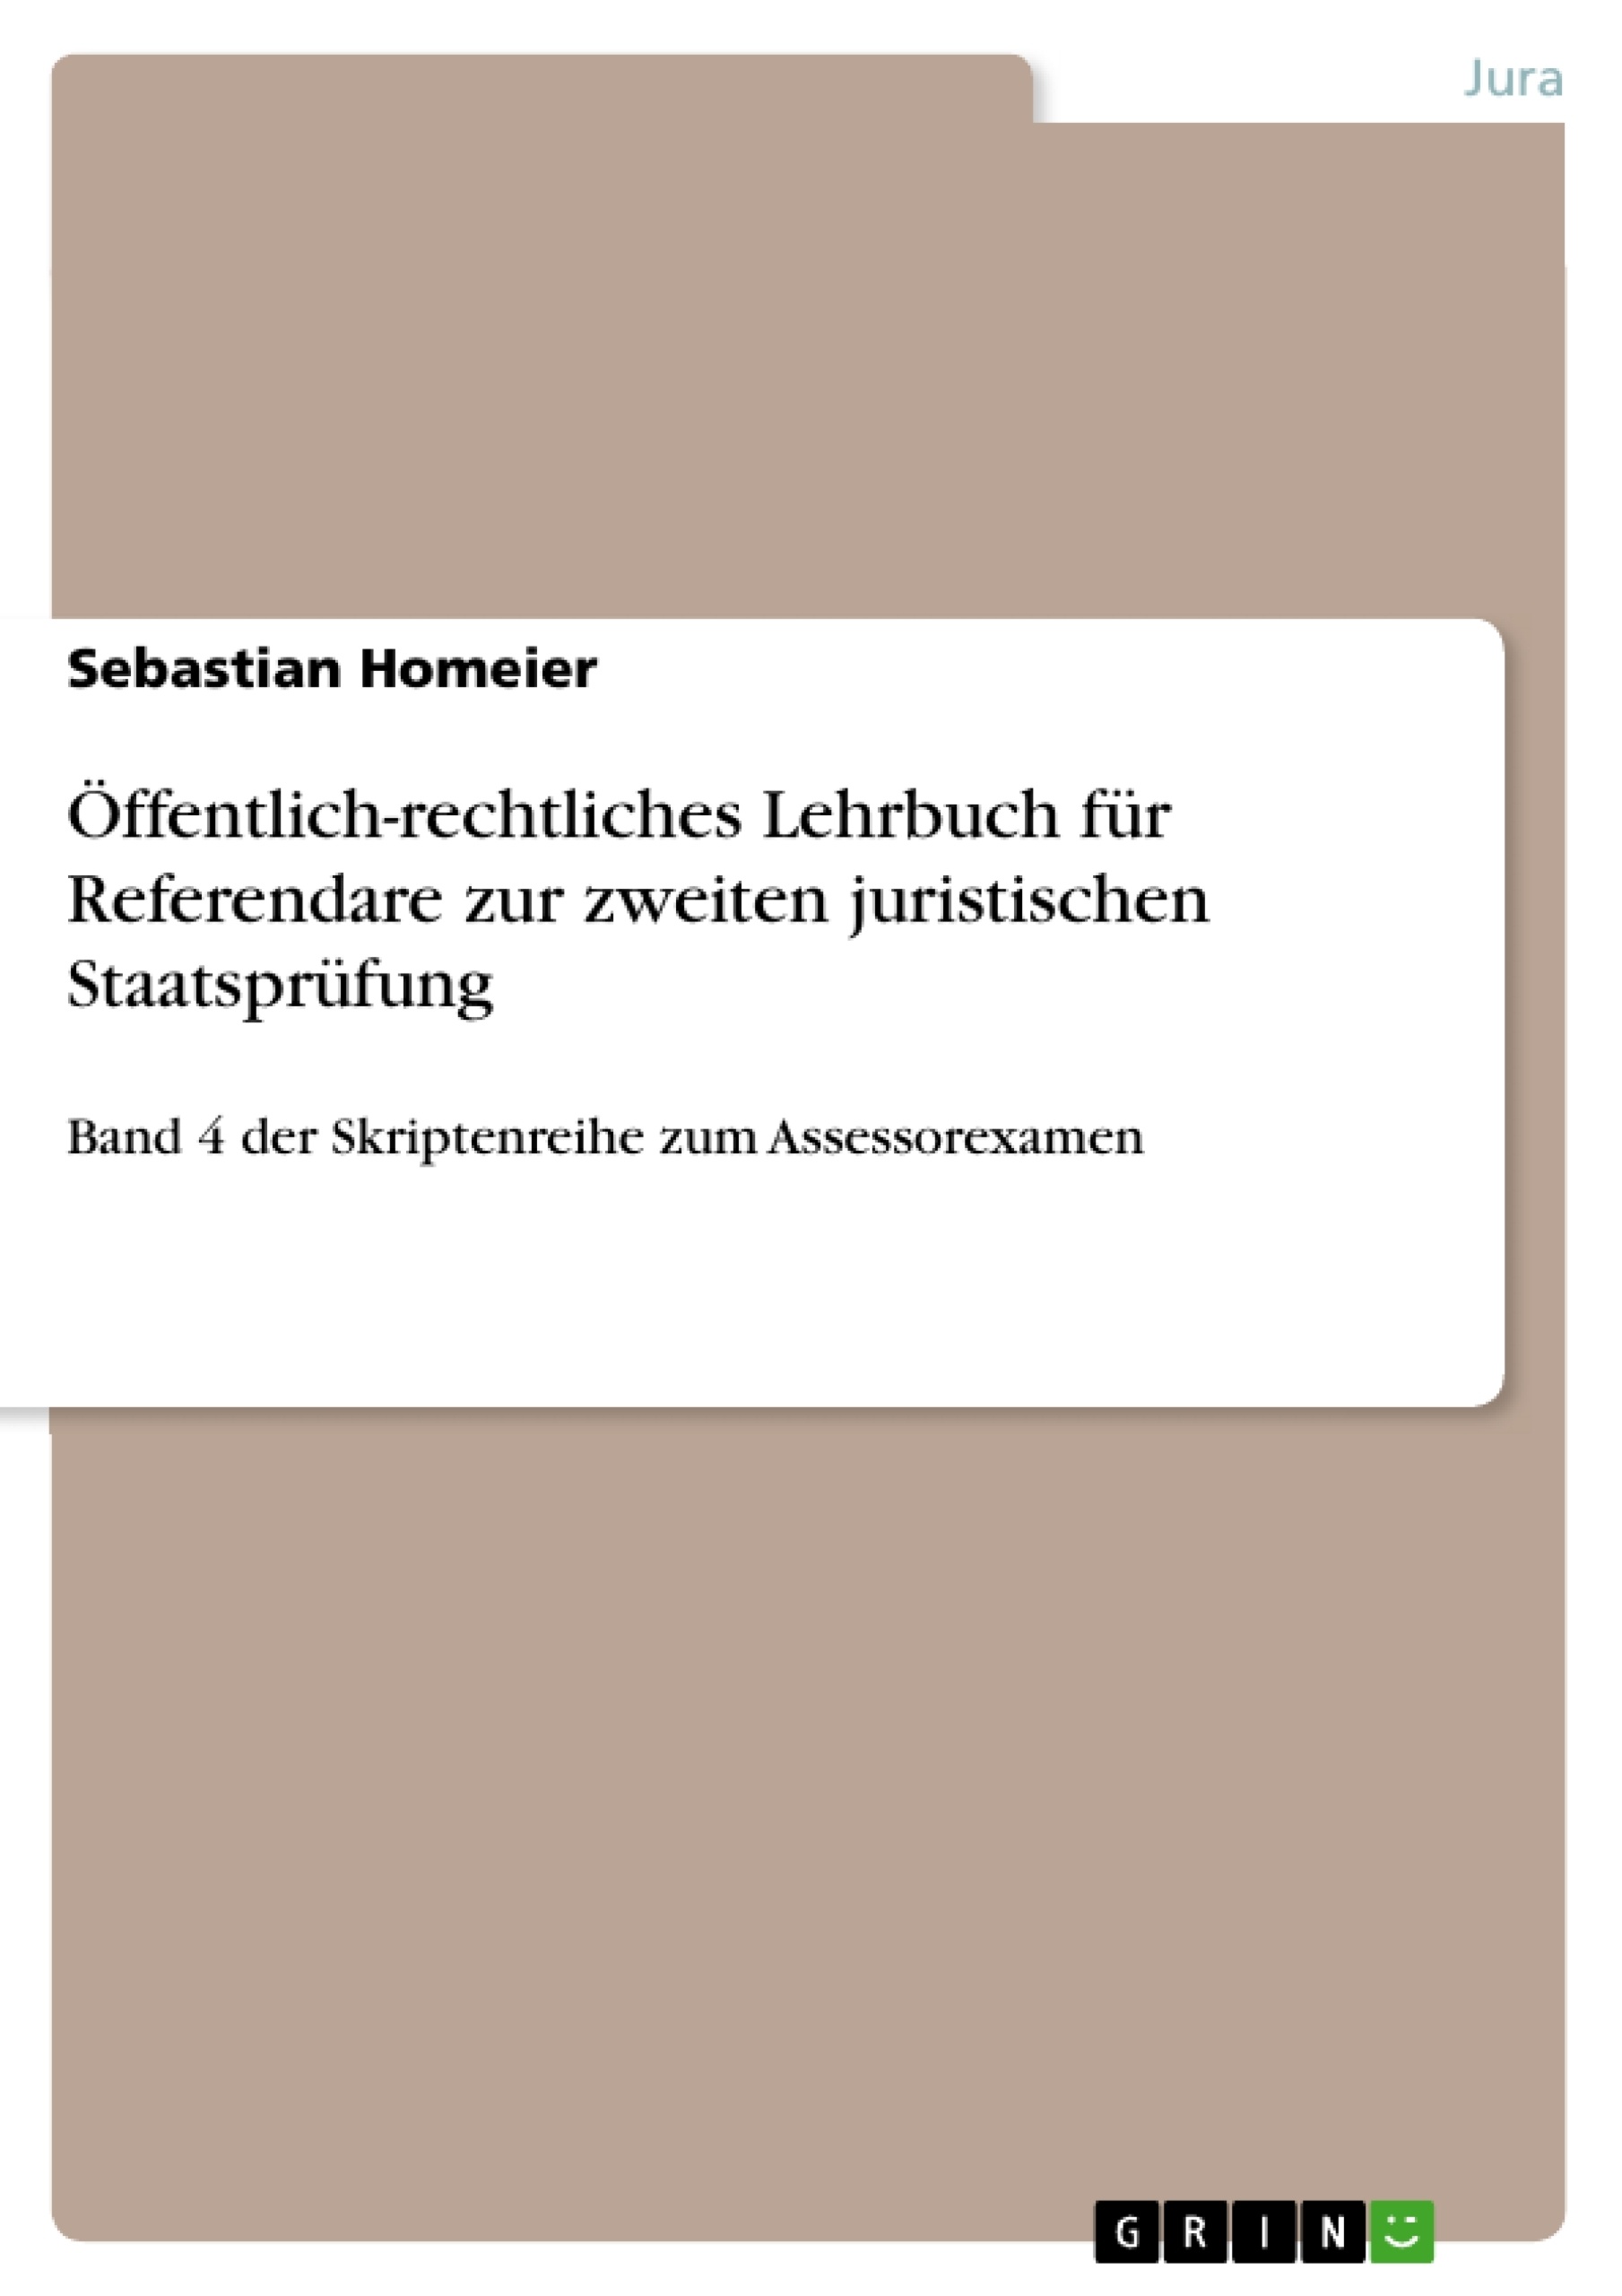 Title: Öffentlich-rechtliches Lehrbuch für Referendare zur zweiten juristischen Staatsprüfung